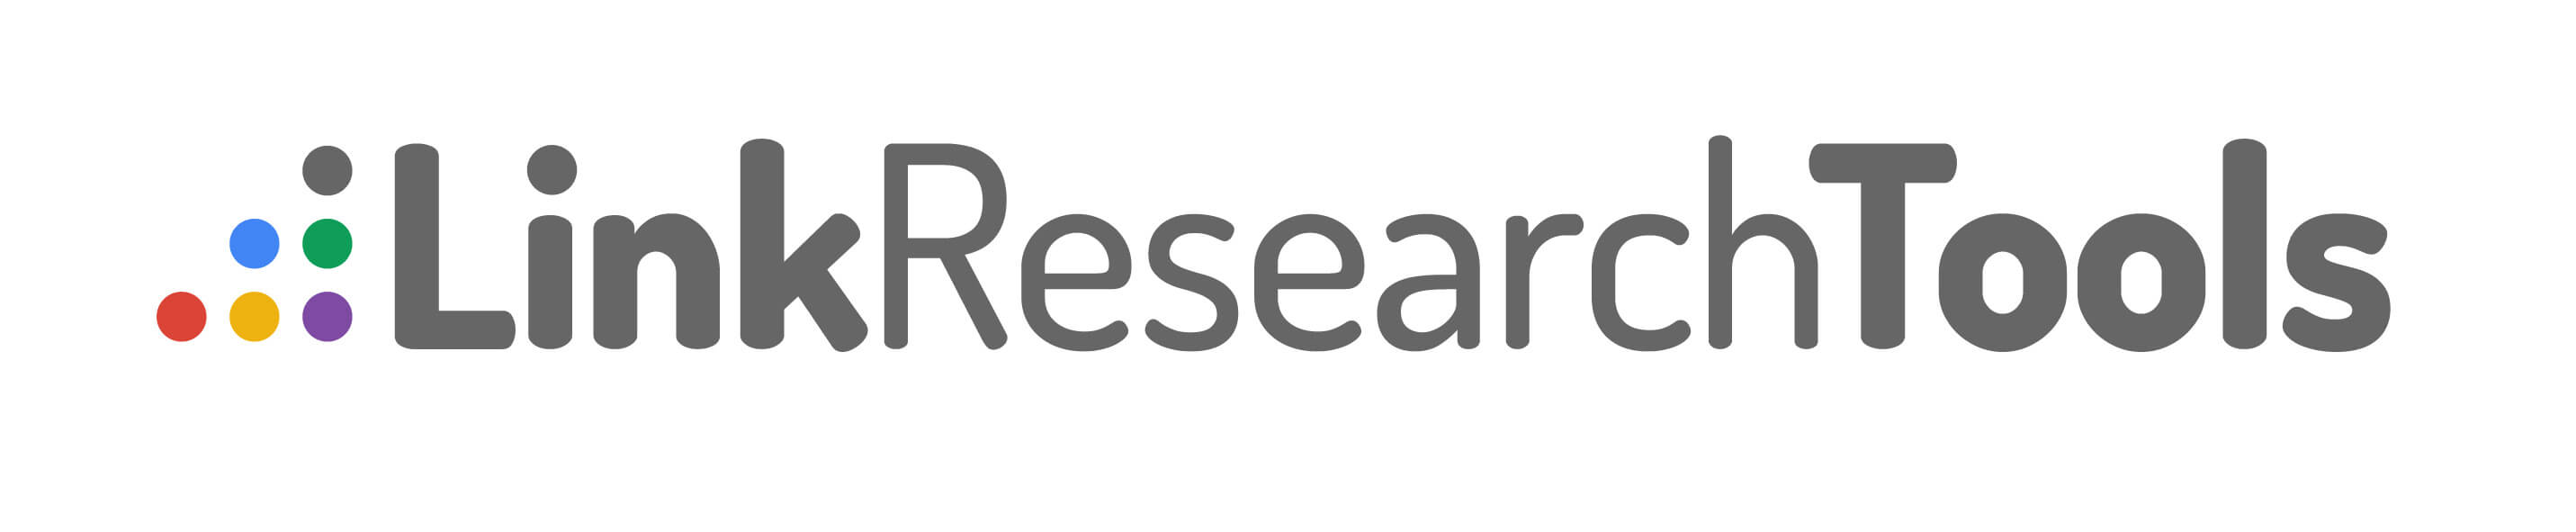 Logo der Link Research Tools, Dreieck mit farbigen Punkten und grauer Schriftzug